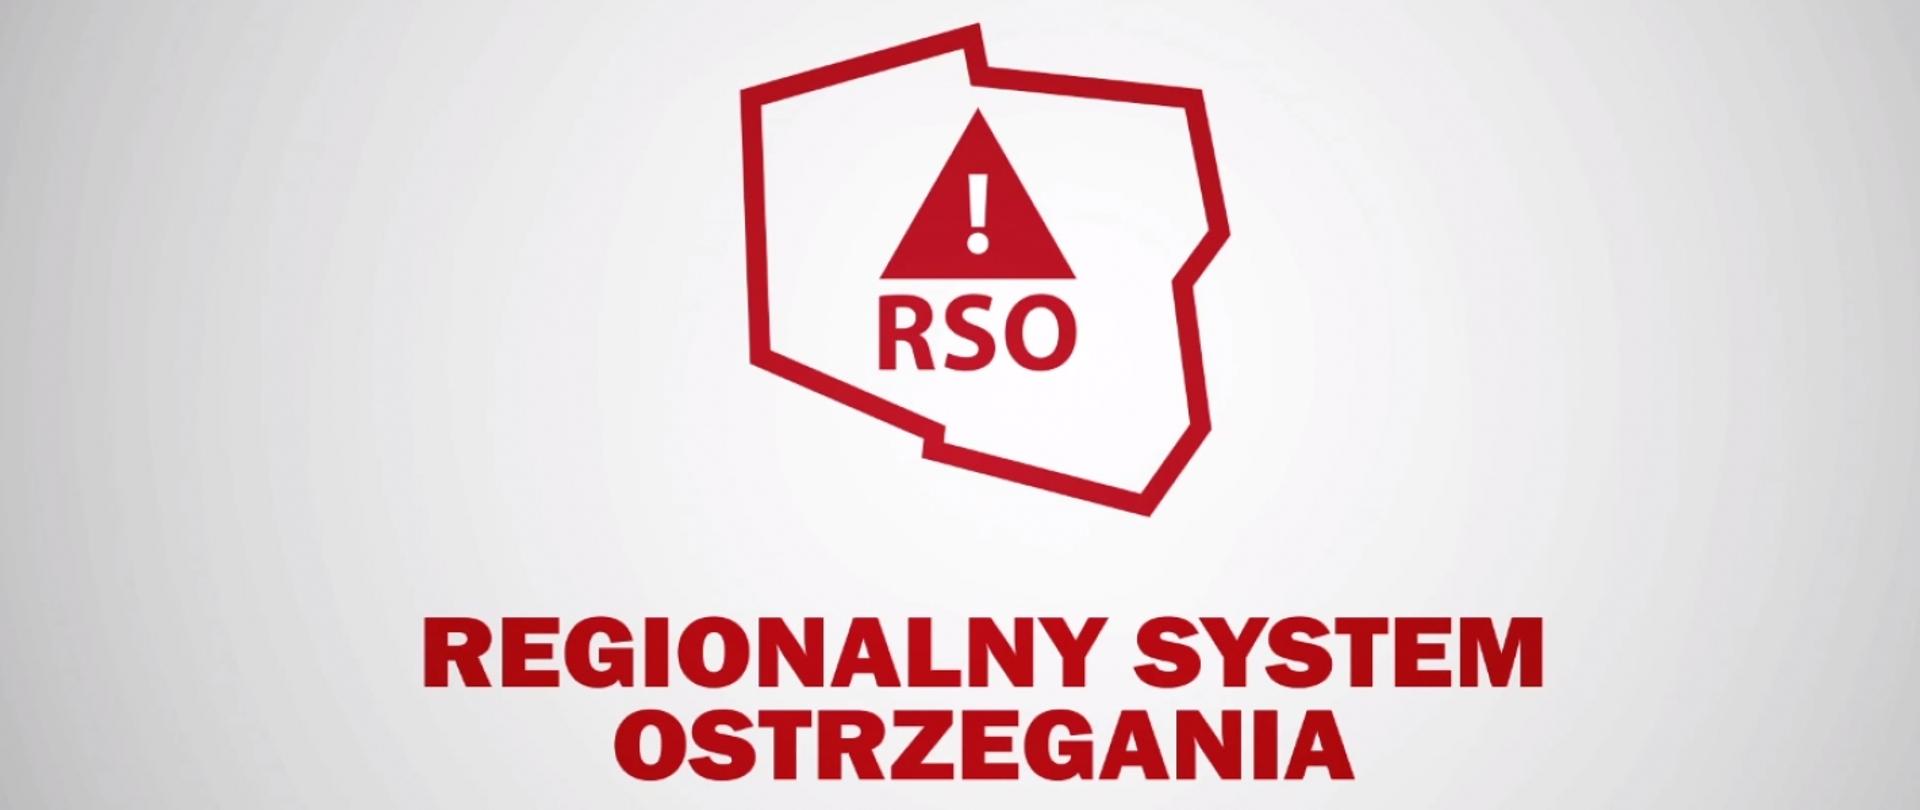 Kontur polski na białym tle, wewnątrz znak ostrzegawczy i skrót RSO.